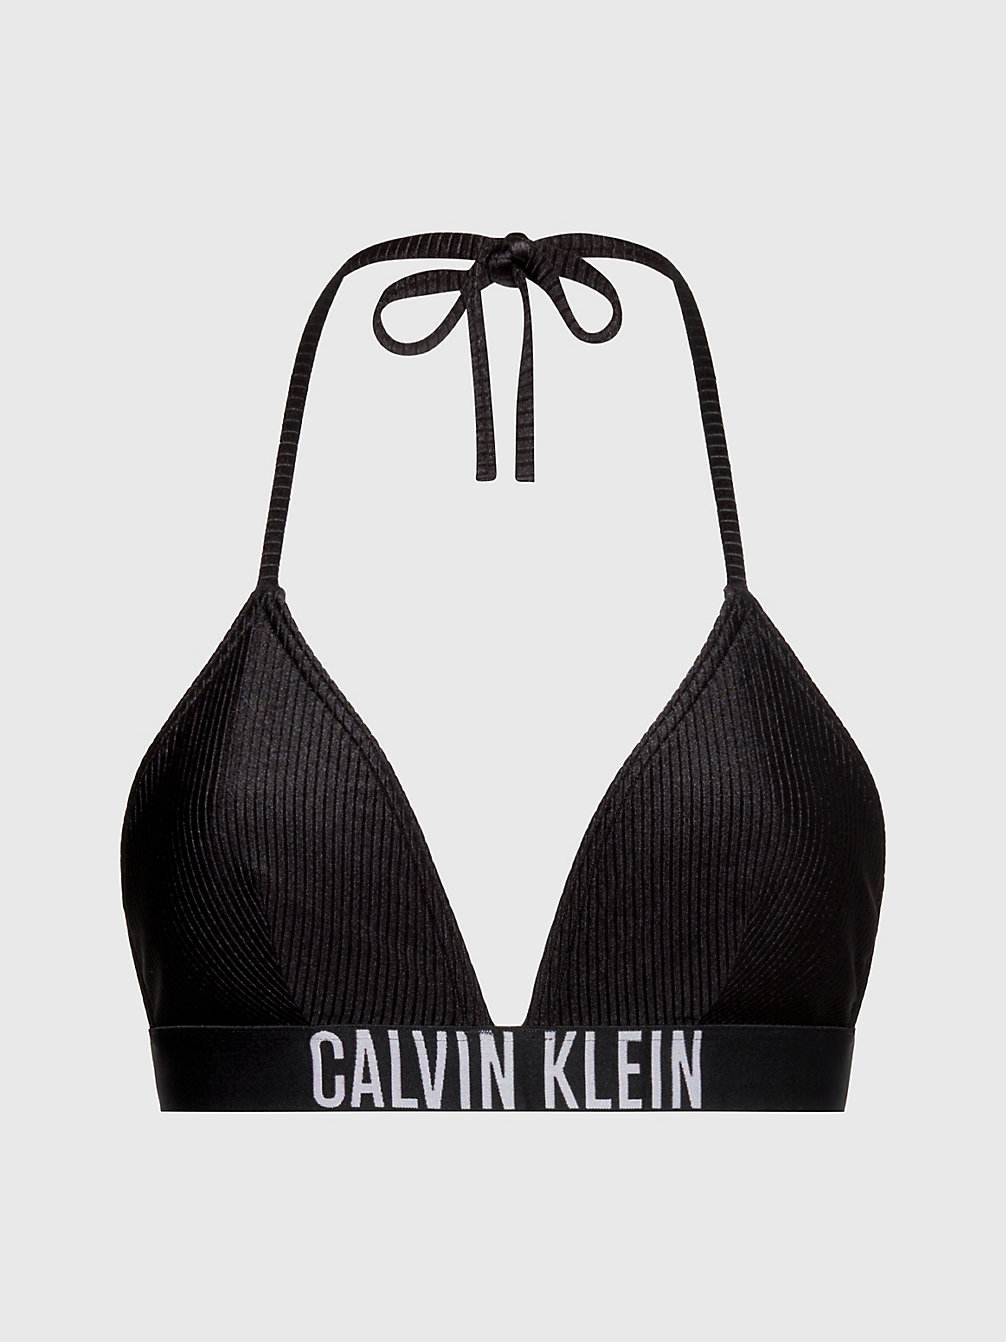 Costumi da Bagno & Abbigliamento Mare Donna | Calvin Klein®